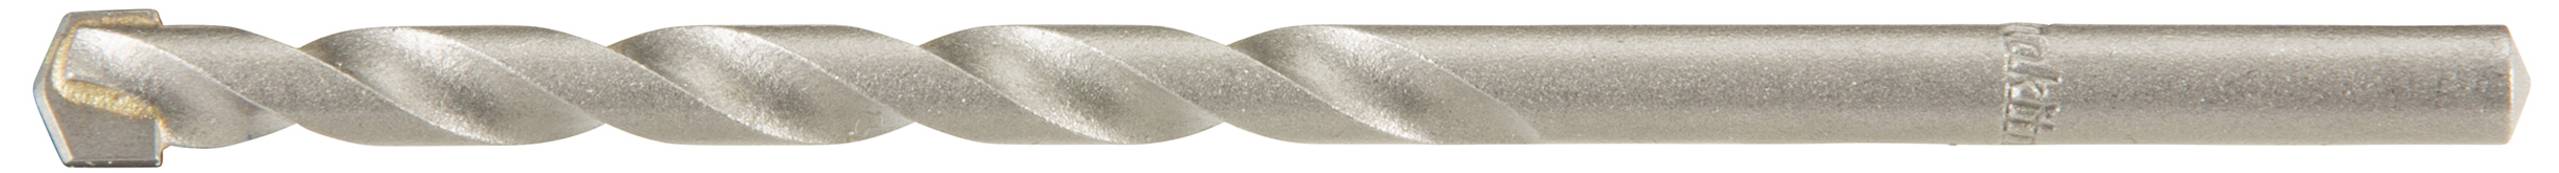 MAKITA Hartmetall Stein-Spiralbohrer 8 mm Makita D-05309 Gesamtlänge 150 mm Zylinderschaft 1 St.